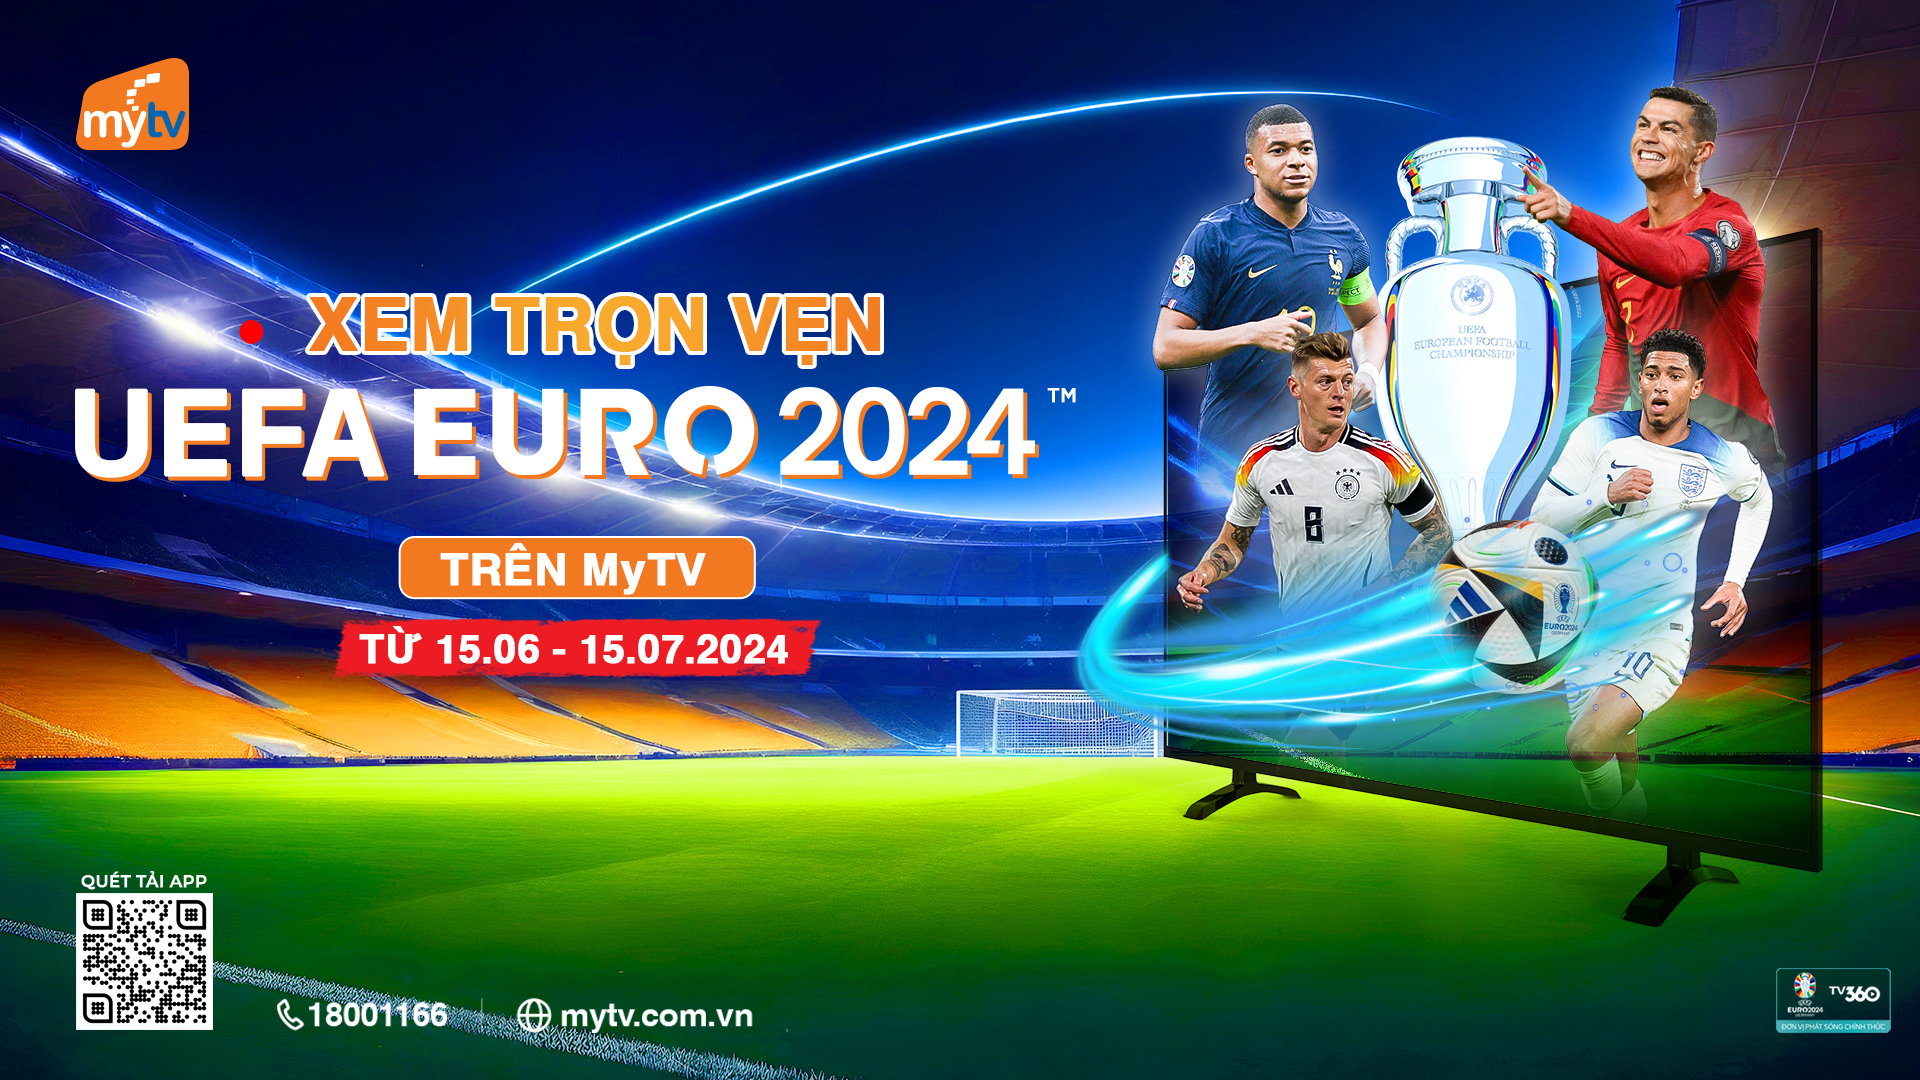 XEM TRỌN VẸN VÒNG CHUNG KẾT EURO 2024 TRÊN DỊCH VỤ MYTV ĐA NỀN TẢNG CỦA VNPT